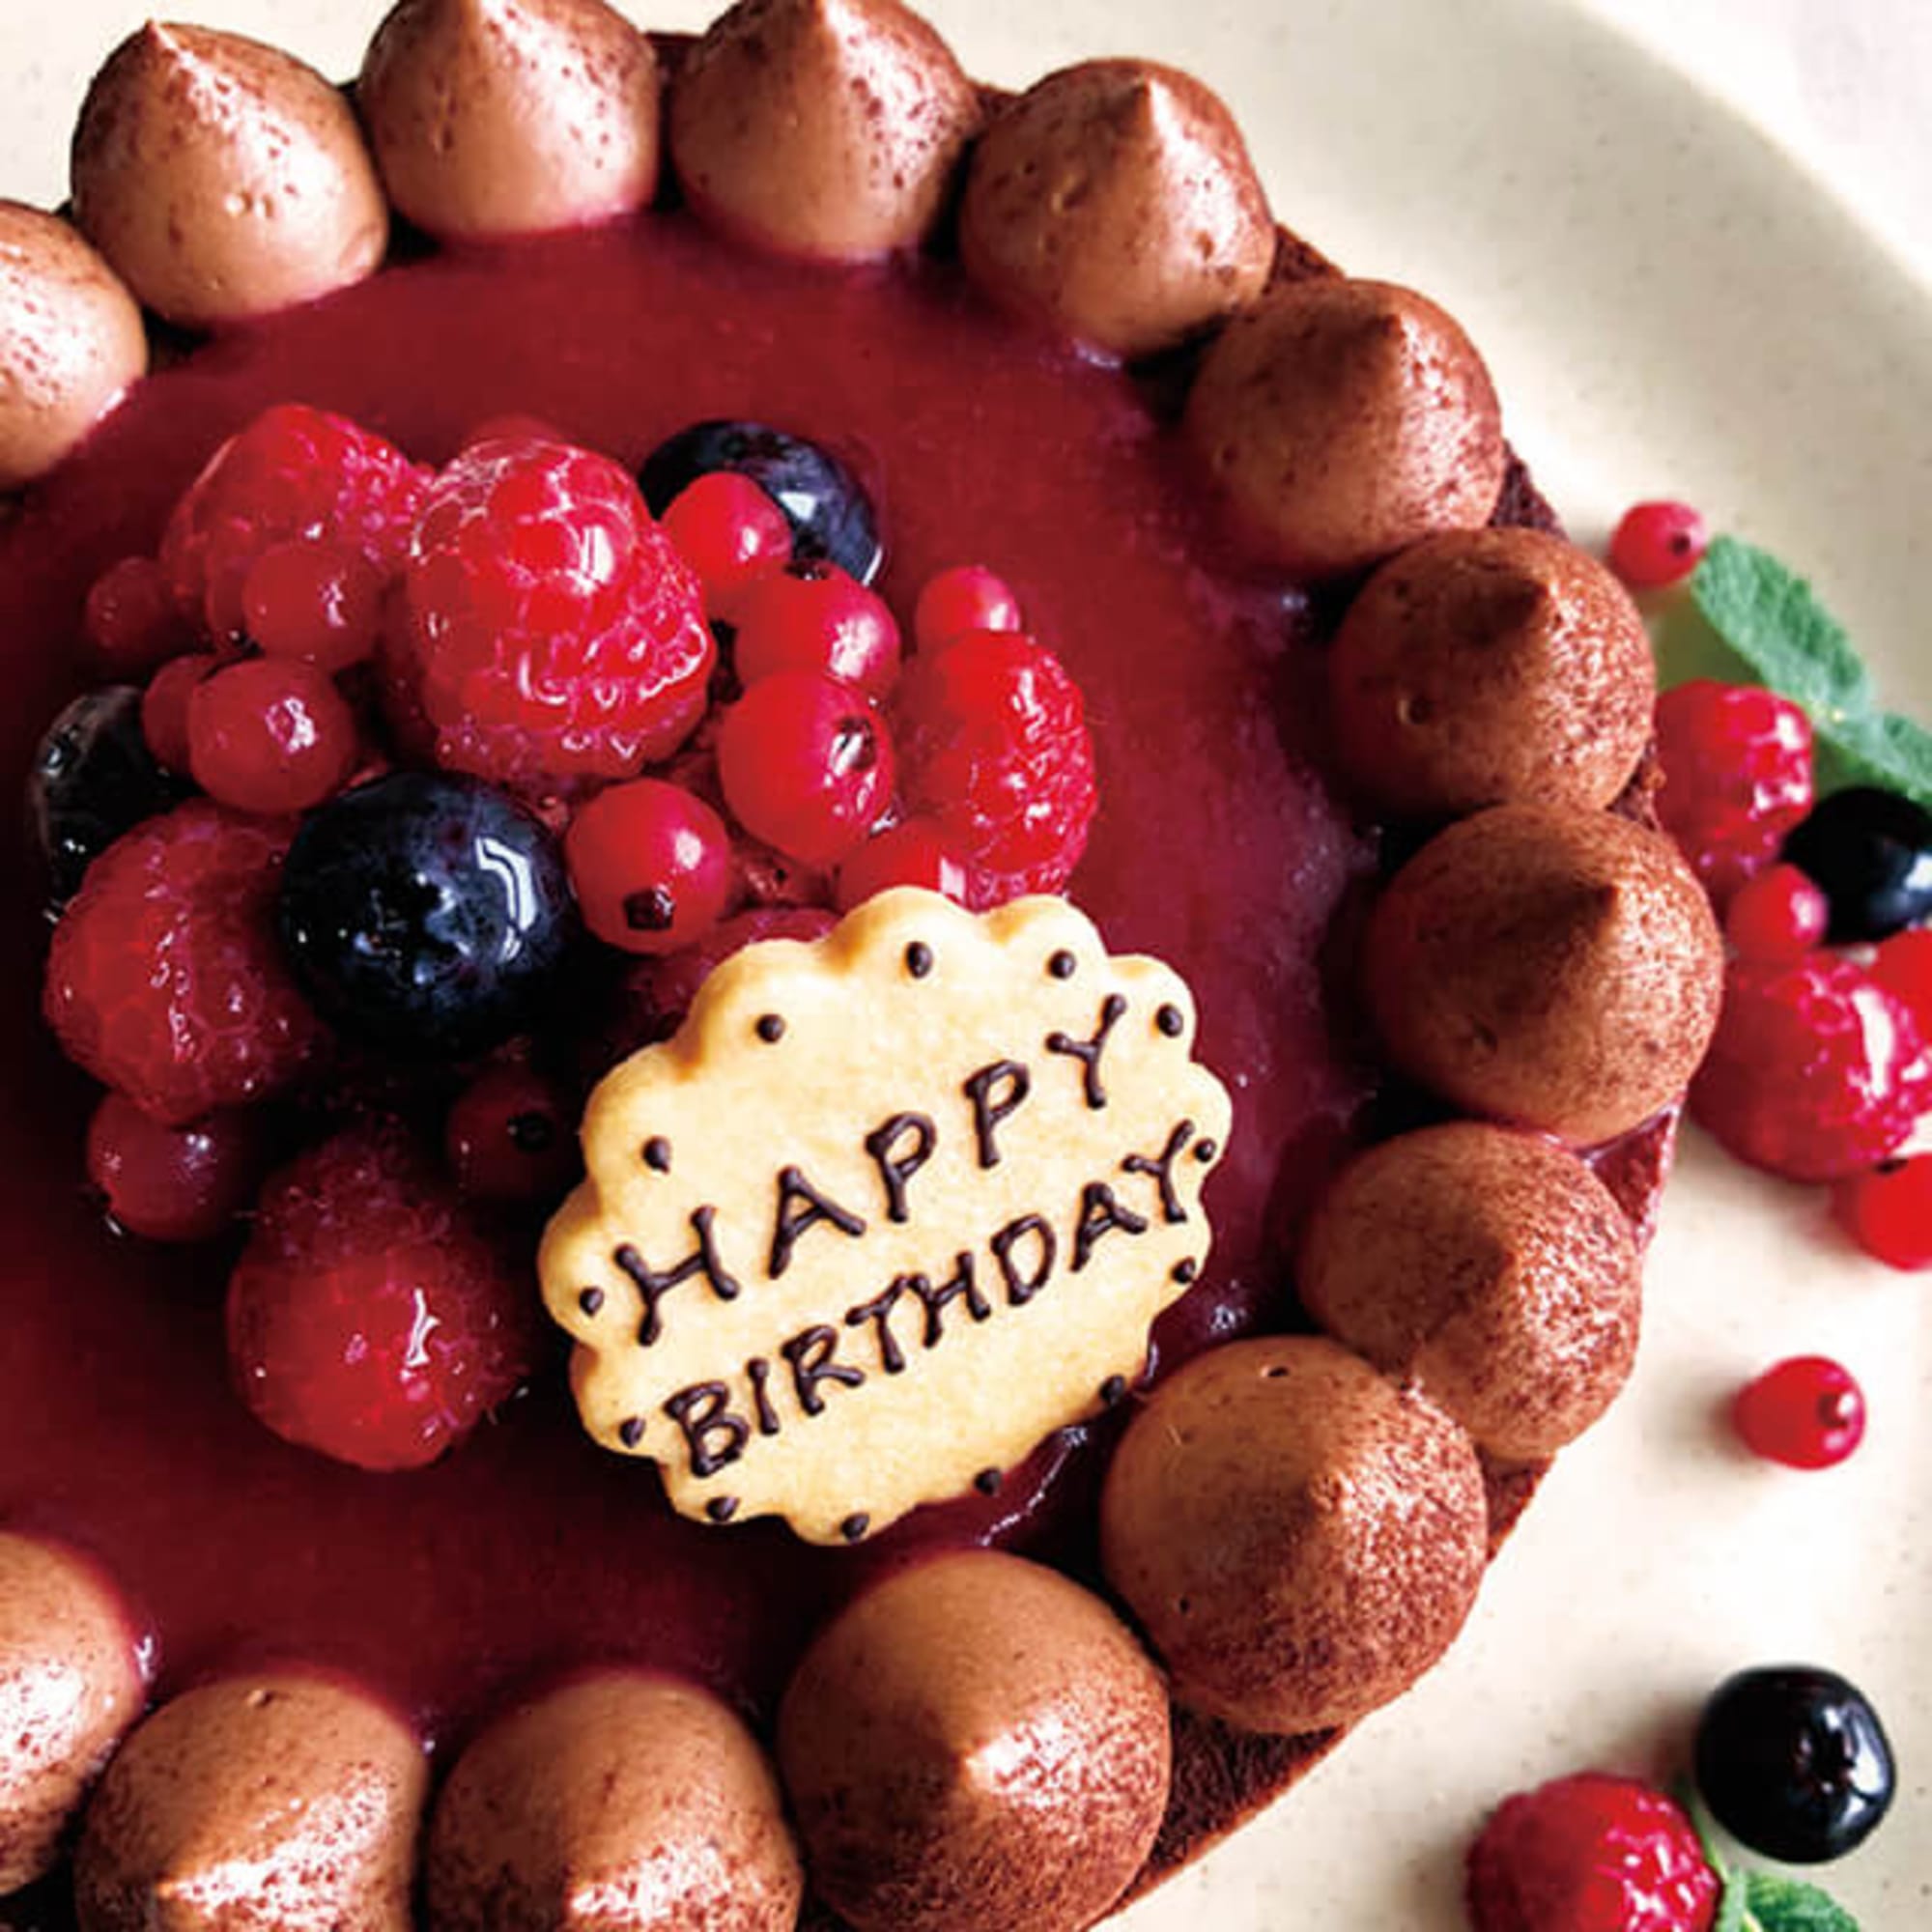 チョコレートケーキ With Crimson Berry 14cm 5 6名様 バースデーケーキ 誕生日ケーキ メッセージプレート キャンドル5本付 誕生日ケーキのお店 エスキィスのプレゼント ギフト通販 Tanp タンプ